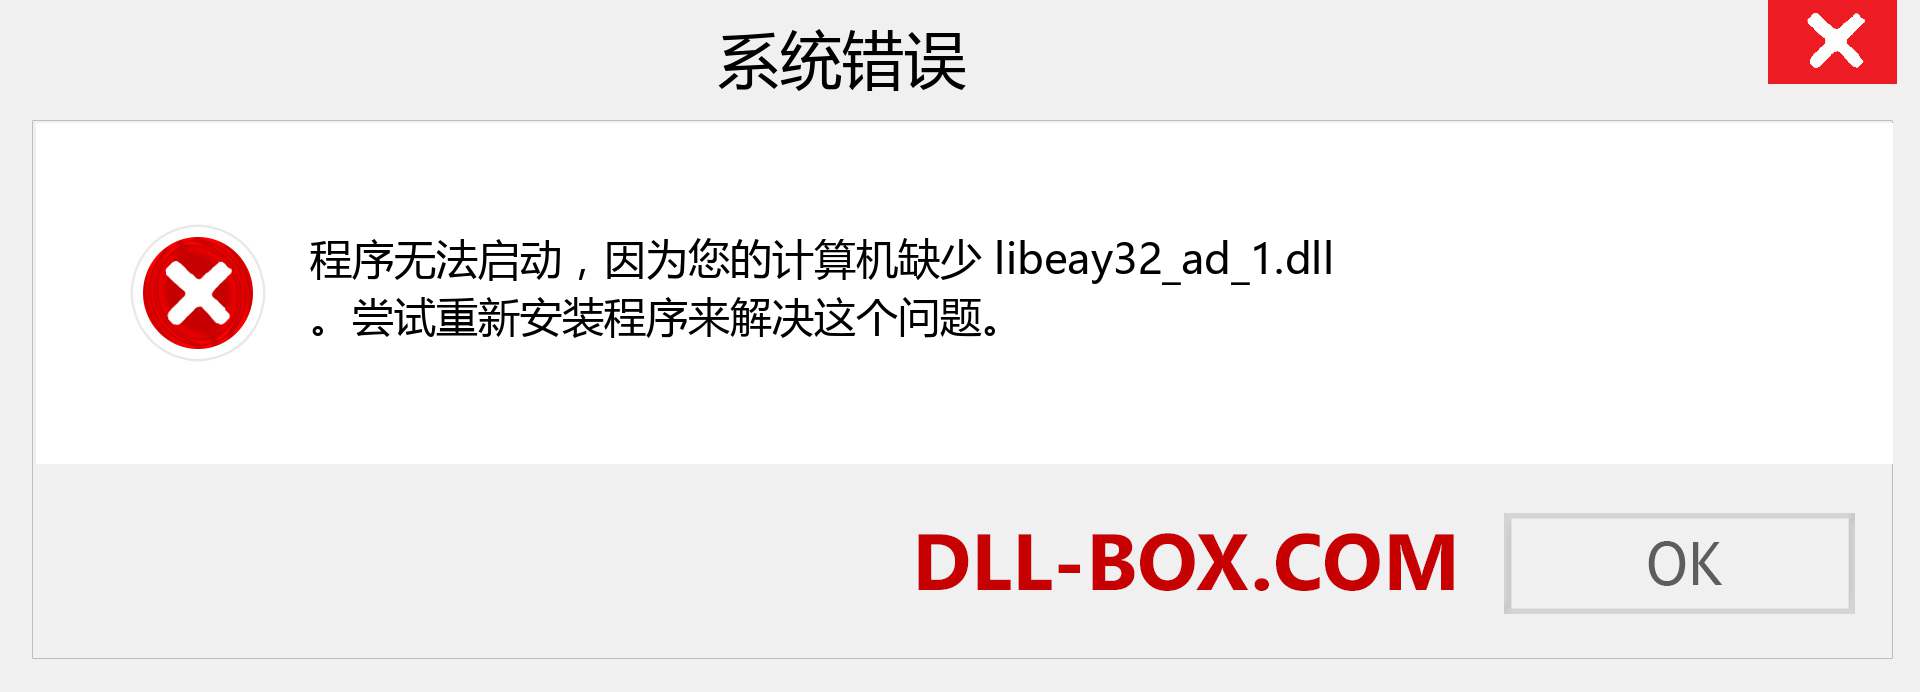 libeay32_ad_1.dll 文件丢失？。 适用于 Windows 7、8、10 的下载 - 修复 Windows、照片、图像上的 libeay32_ad_1 dll 丢失错误